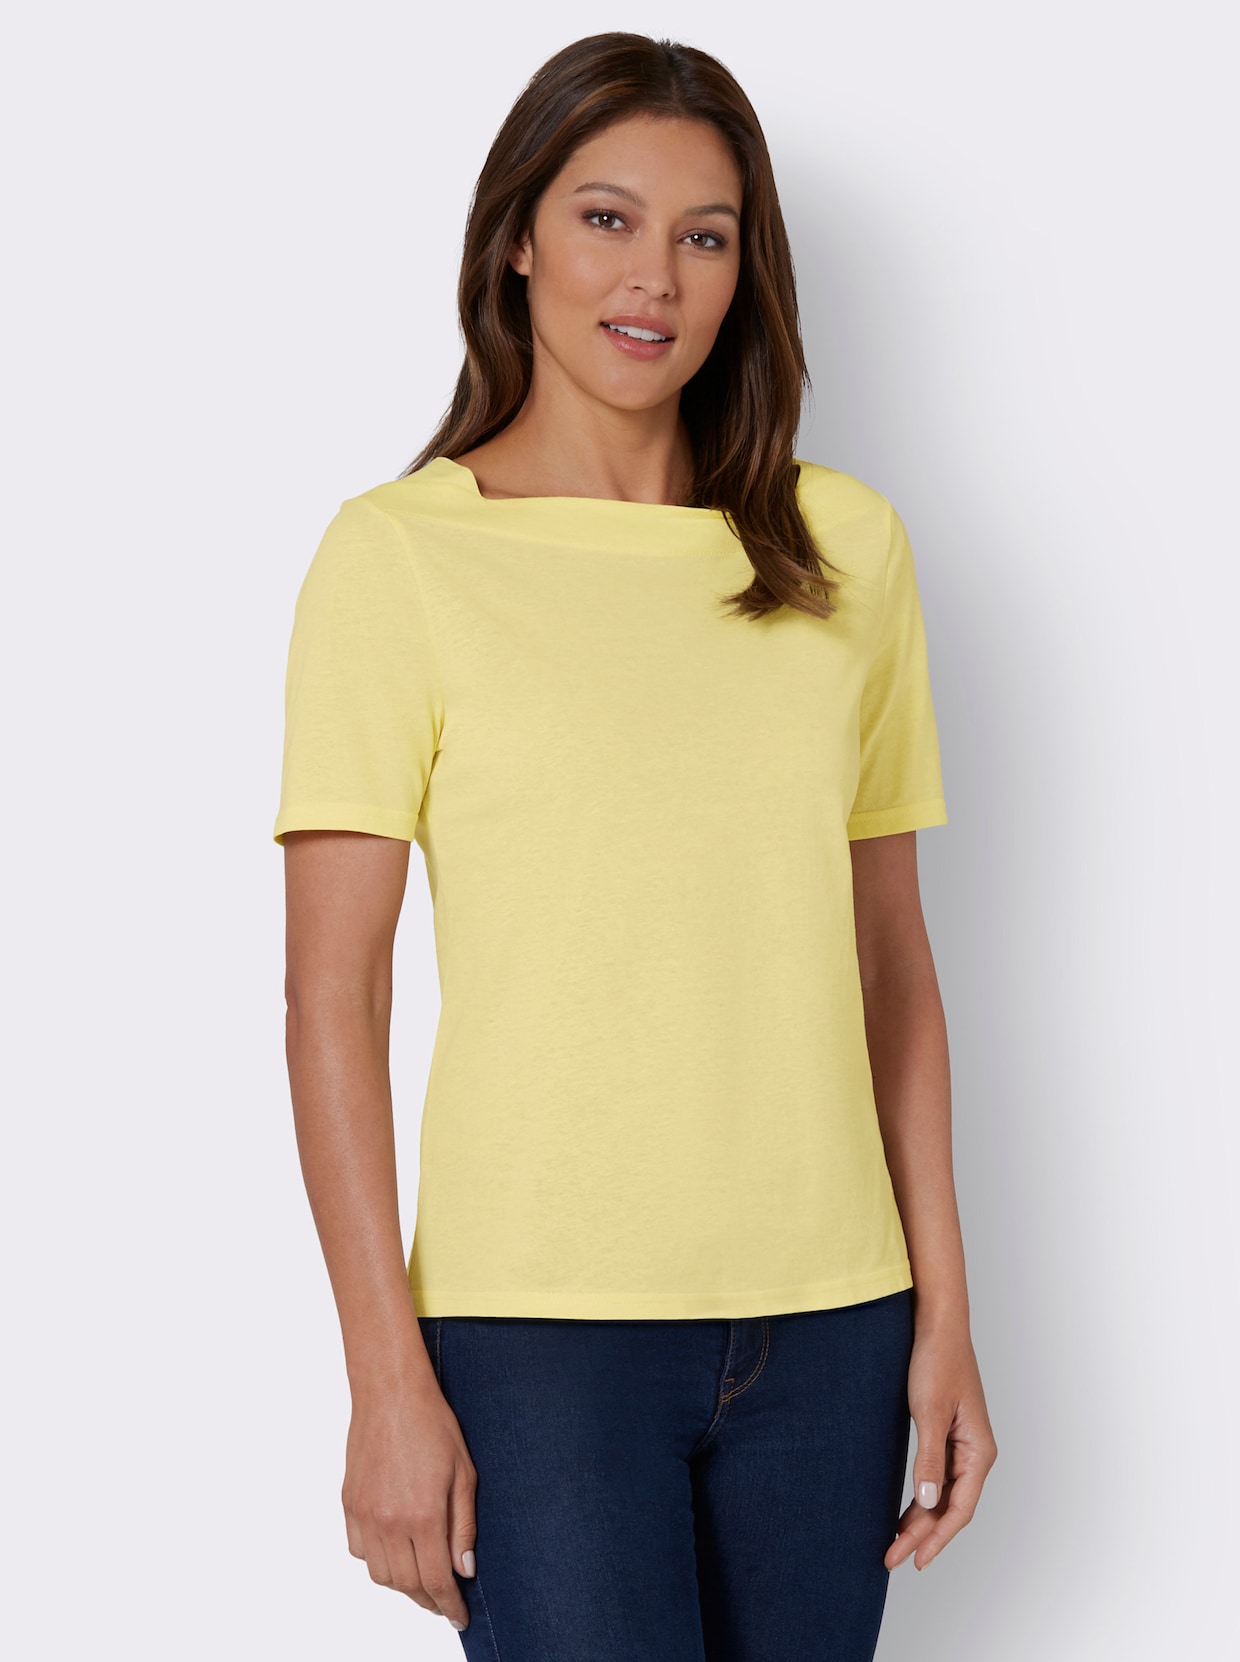 Tričko s krátkým rukávem - citronová